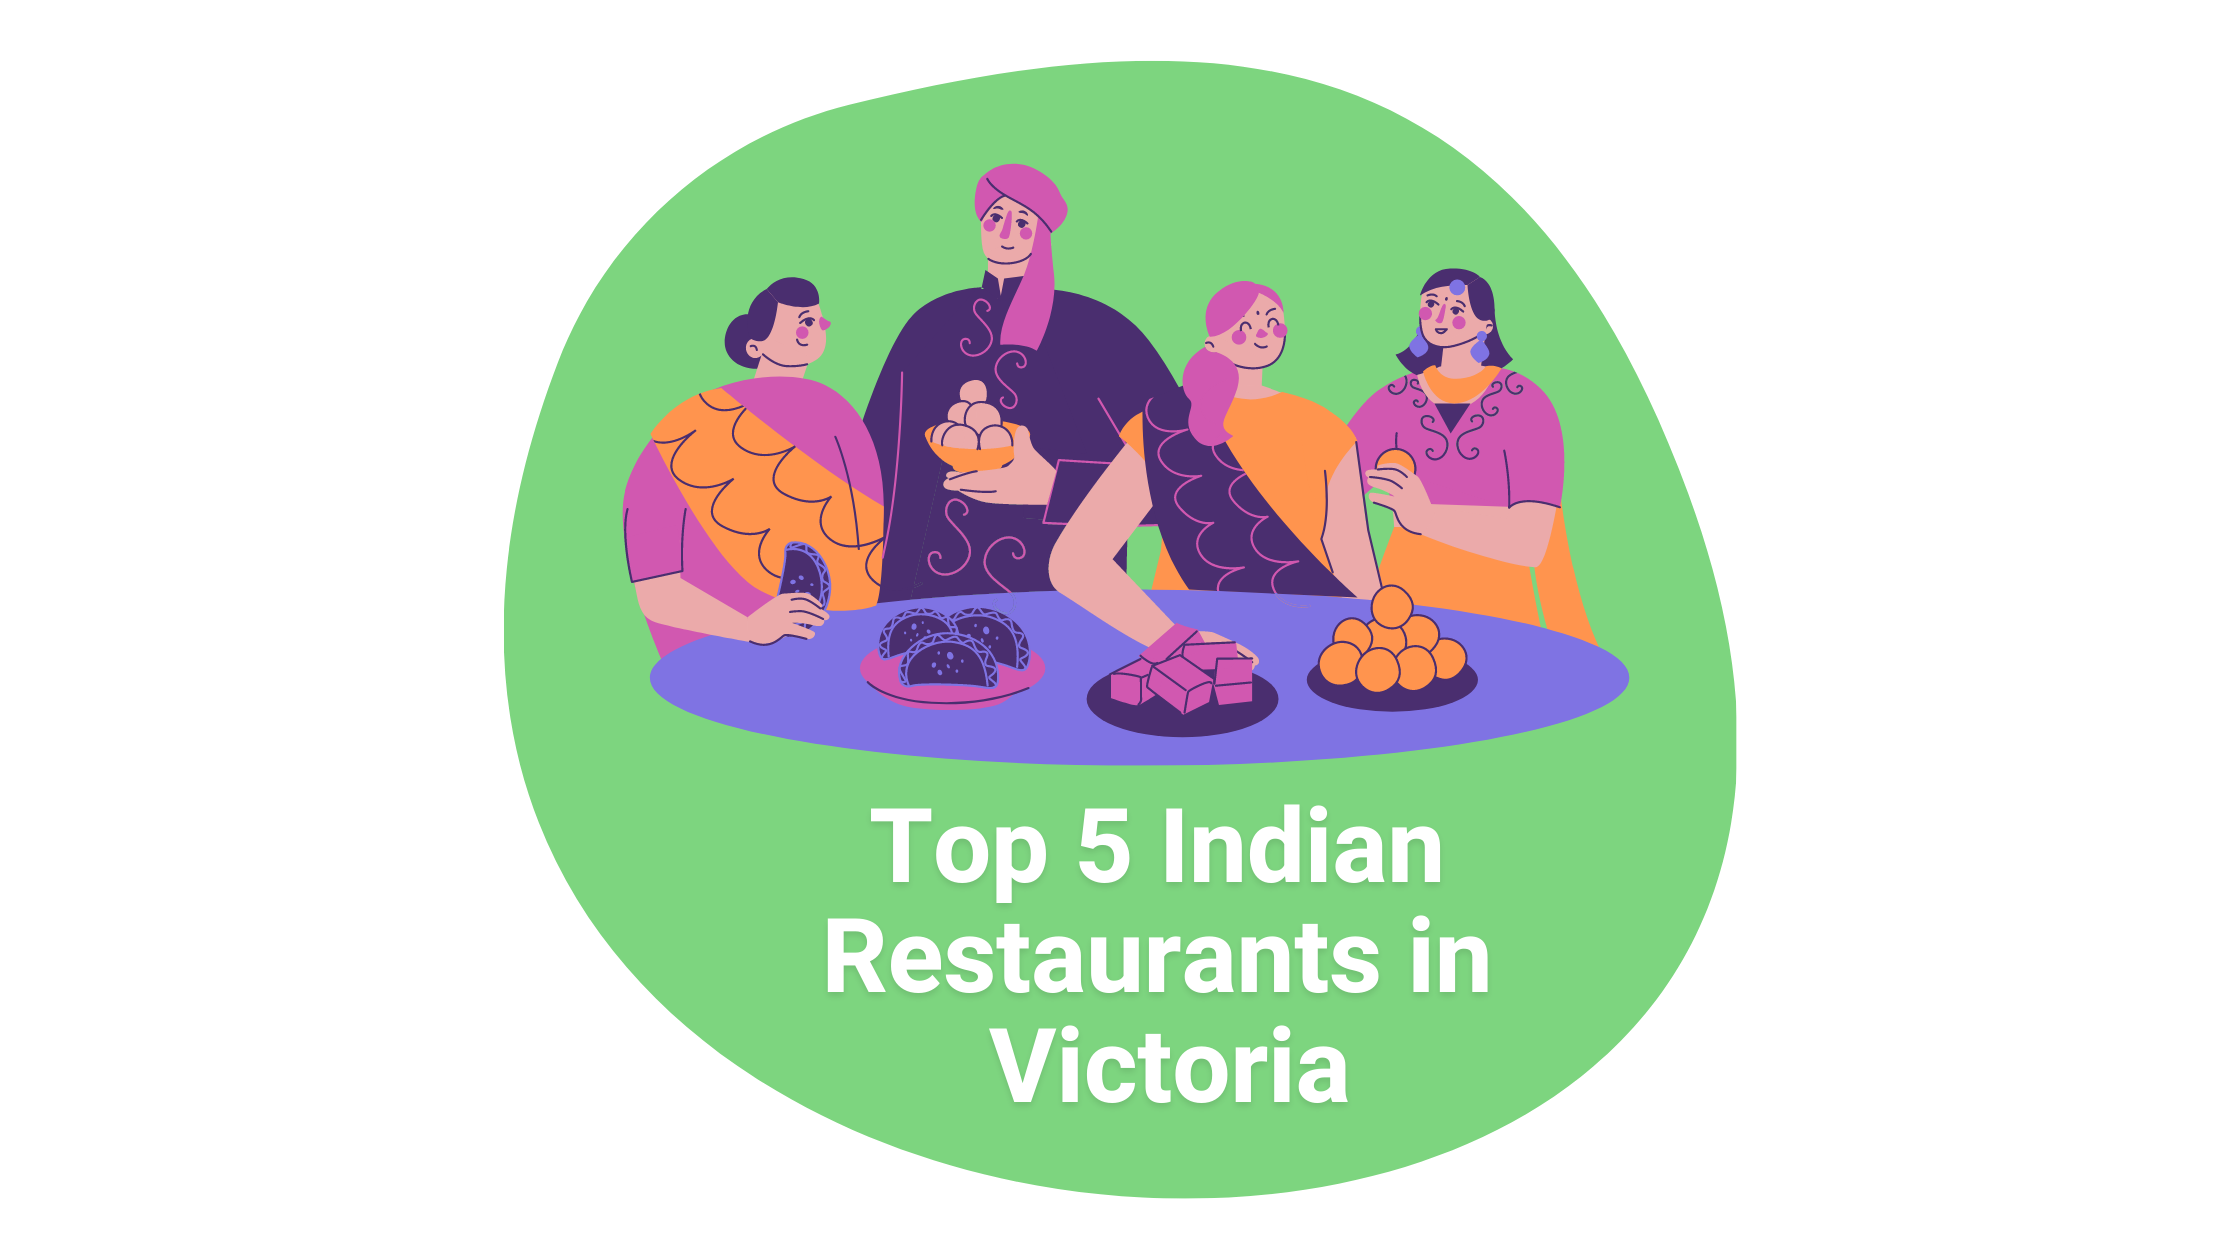 Top 5 Indian Restaurants in Victoria 